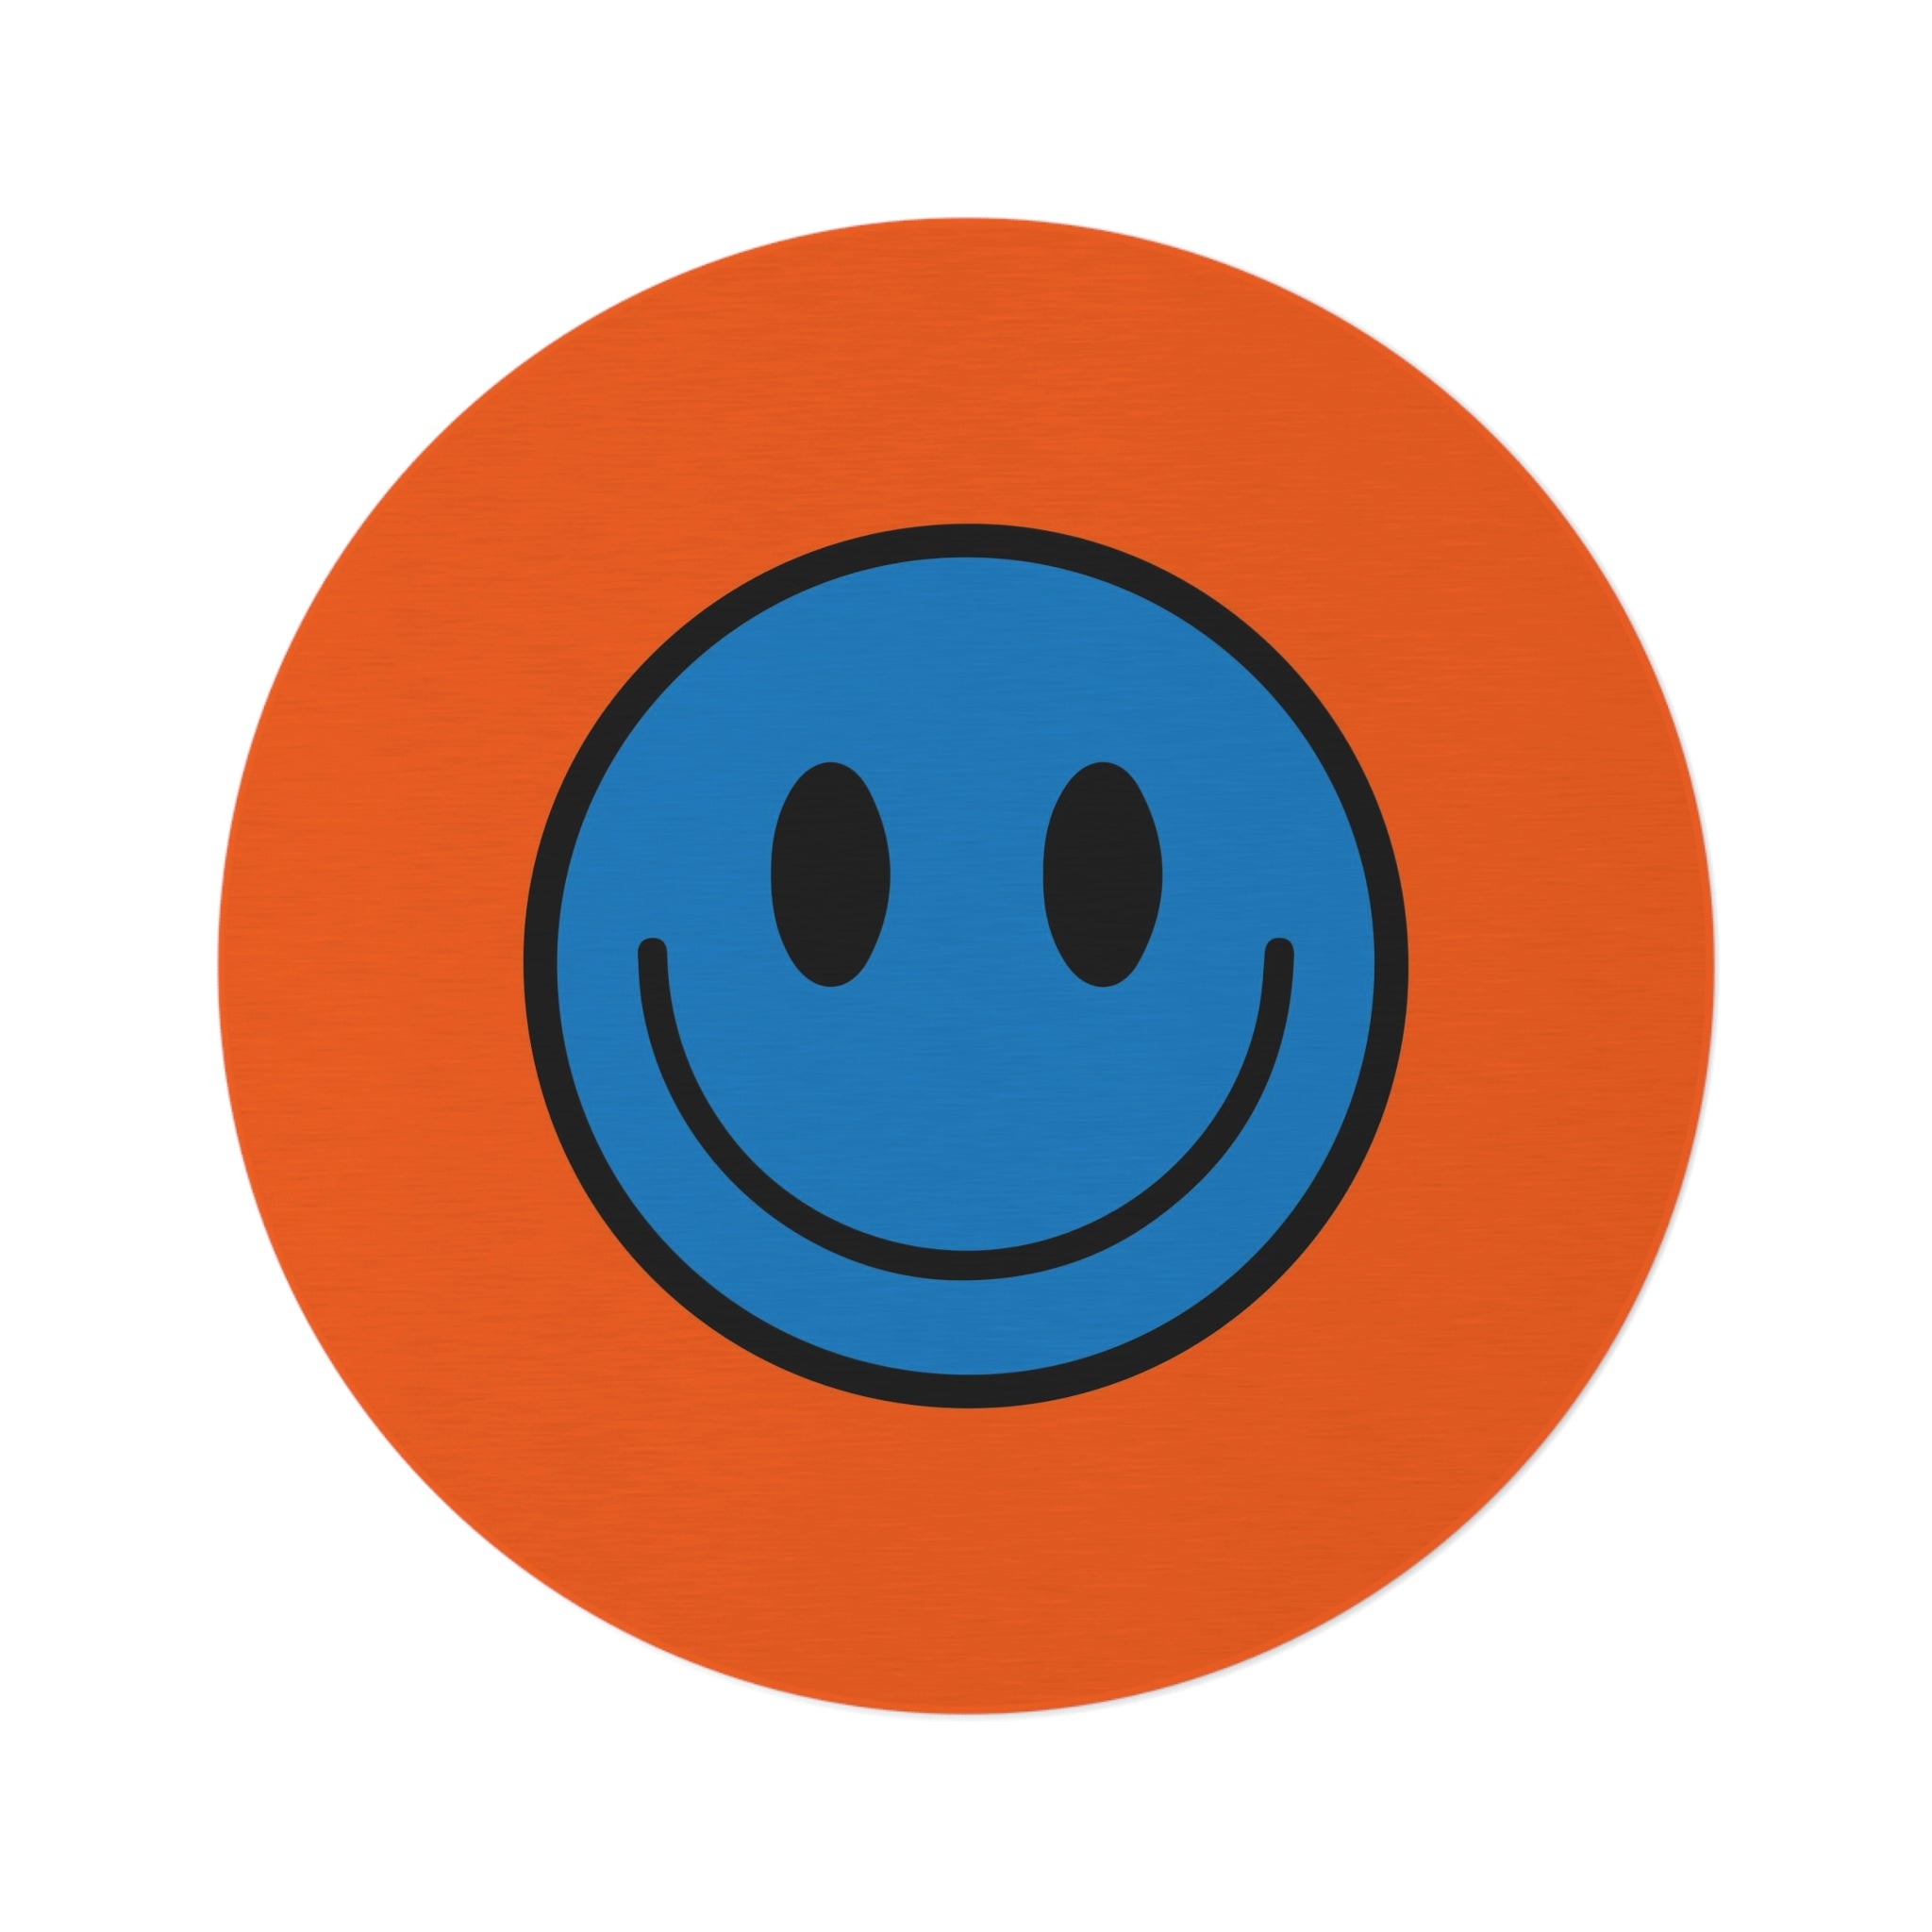 Round Rug Happy Face pattern blue/orange